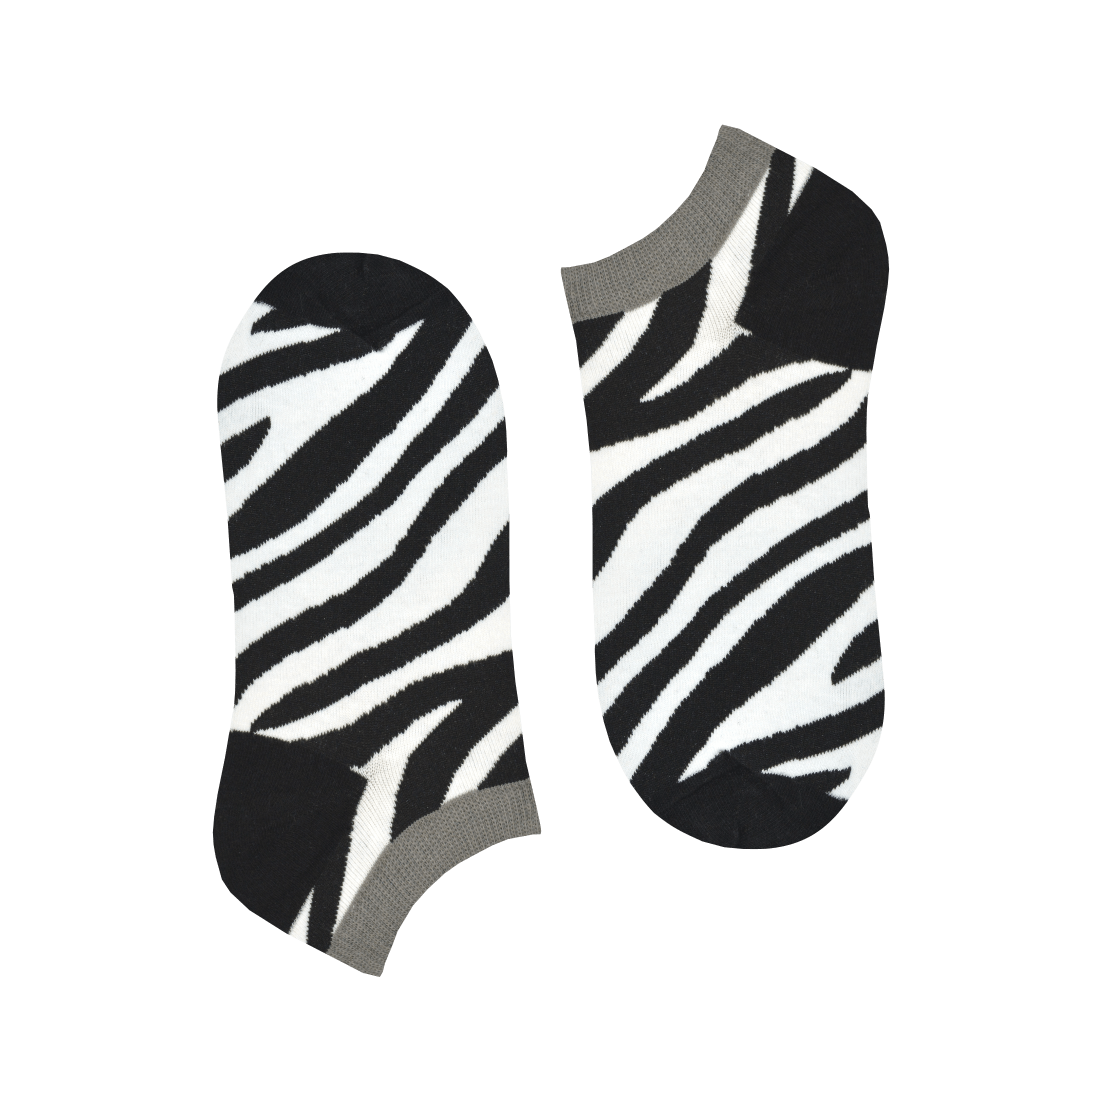 Medias Locas invisibles calcetines baletas divertidos de diseño de cebras Freaky Socks. Medias tobilleras cebras